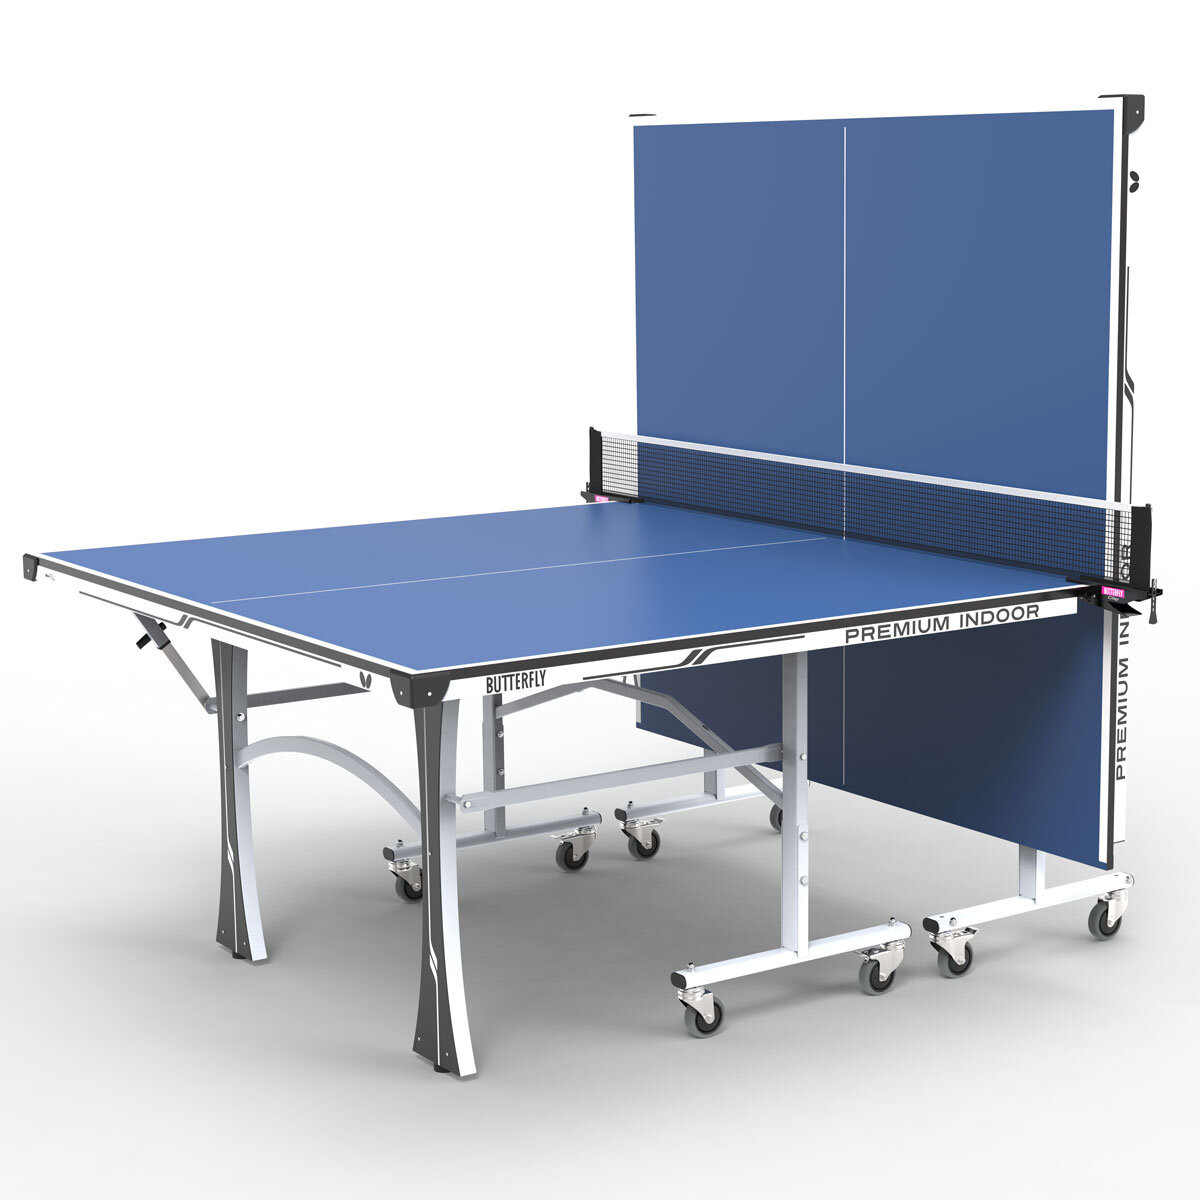 Butterfly Premium Indoor Table Tennis